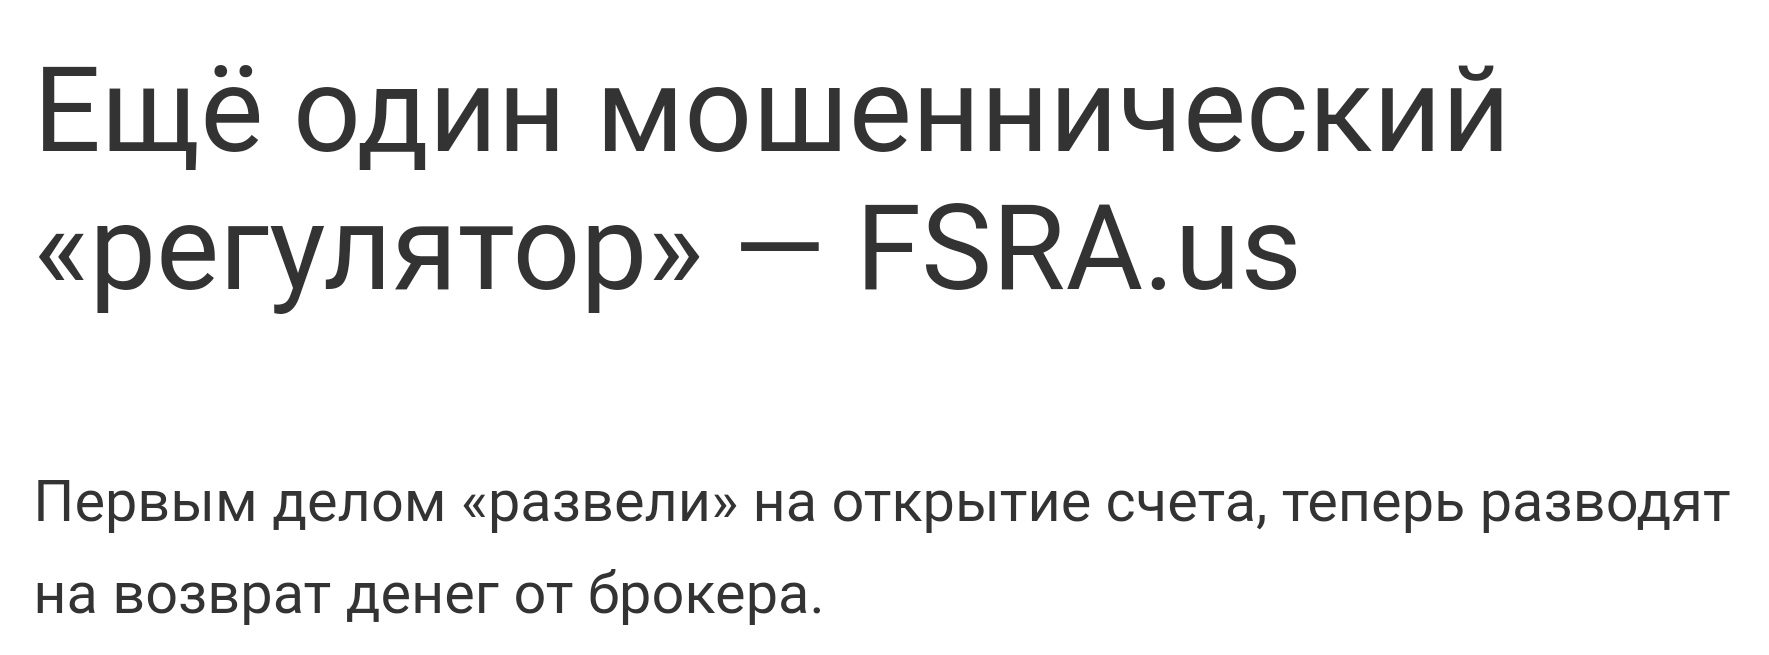 Fsra.us отзывы